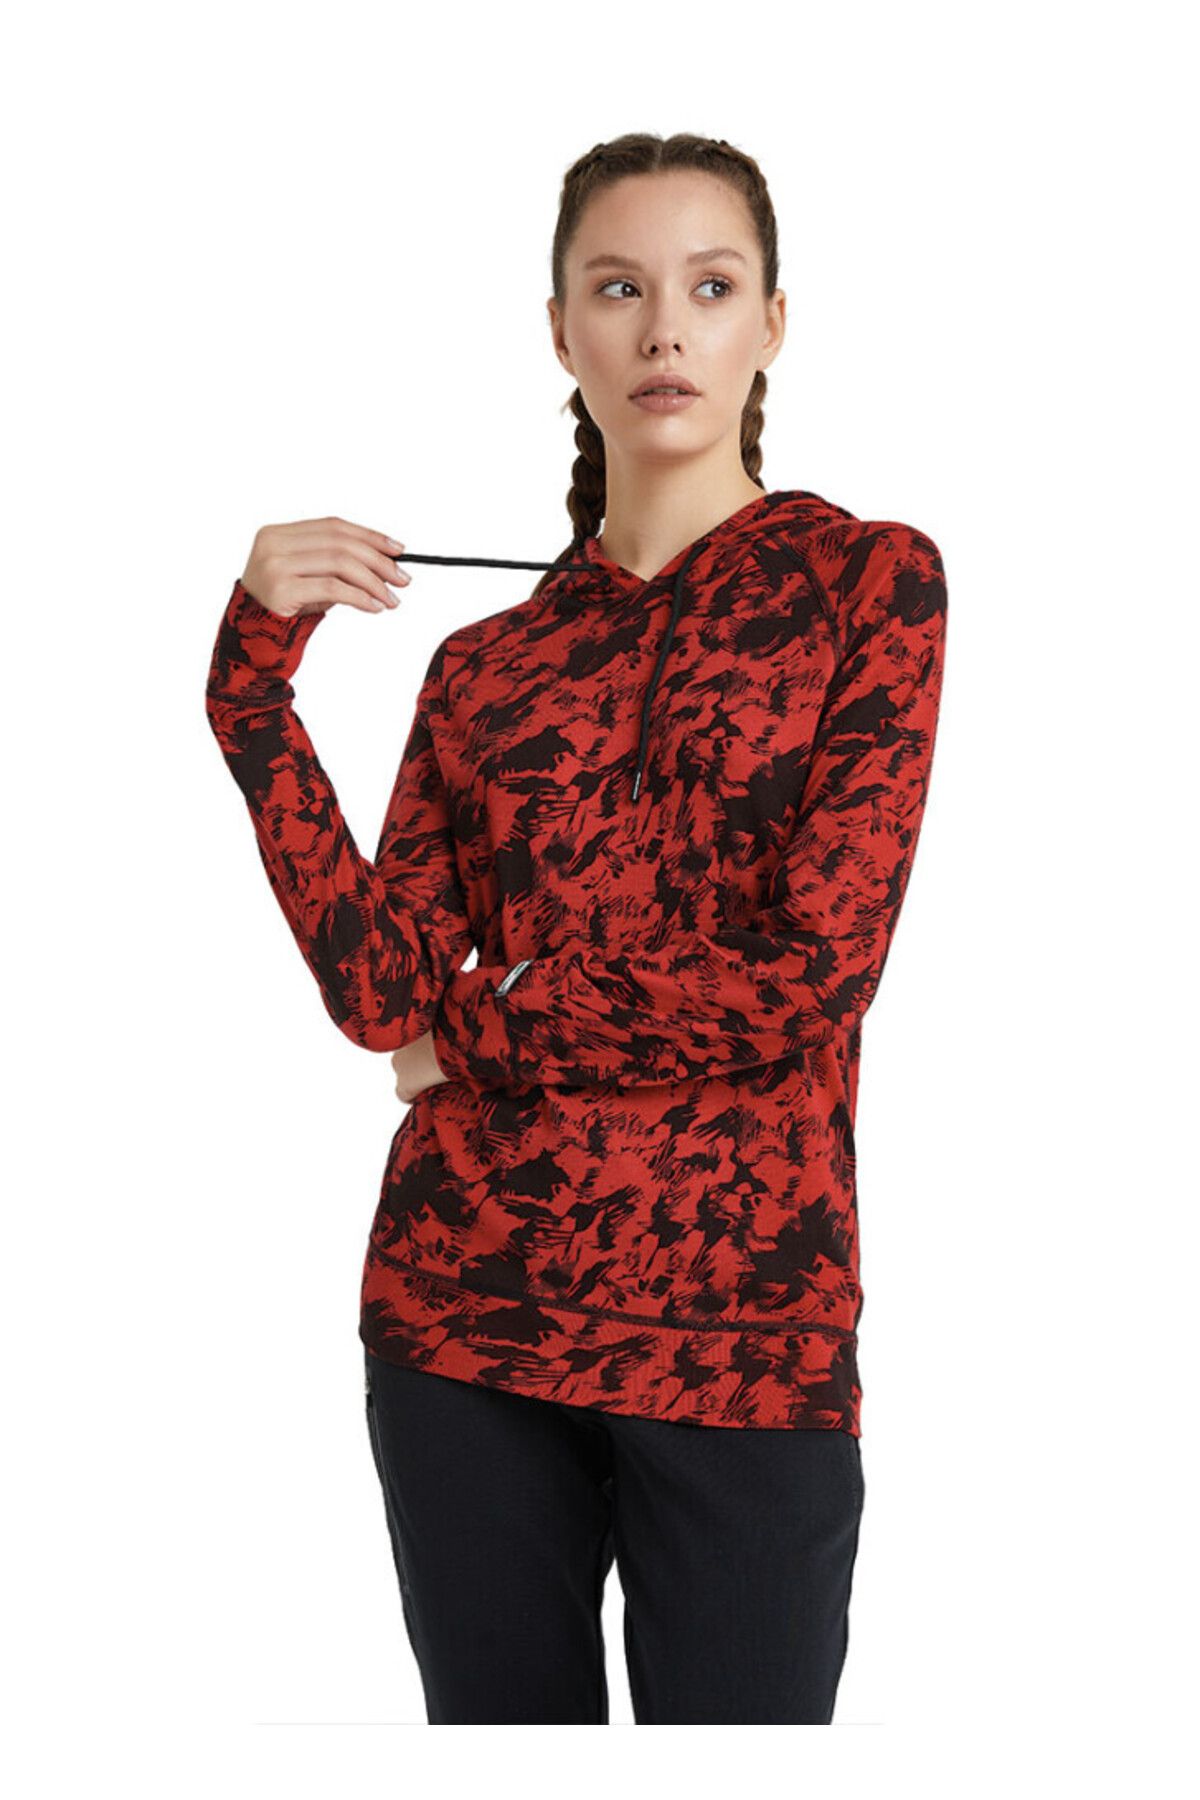 Blackspade Kadın Termal Kapşonlu Sweatshirt 2. Seviye 6194 - Kırmızı